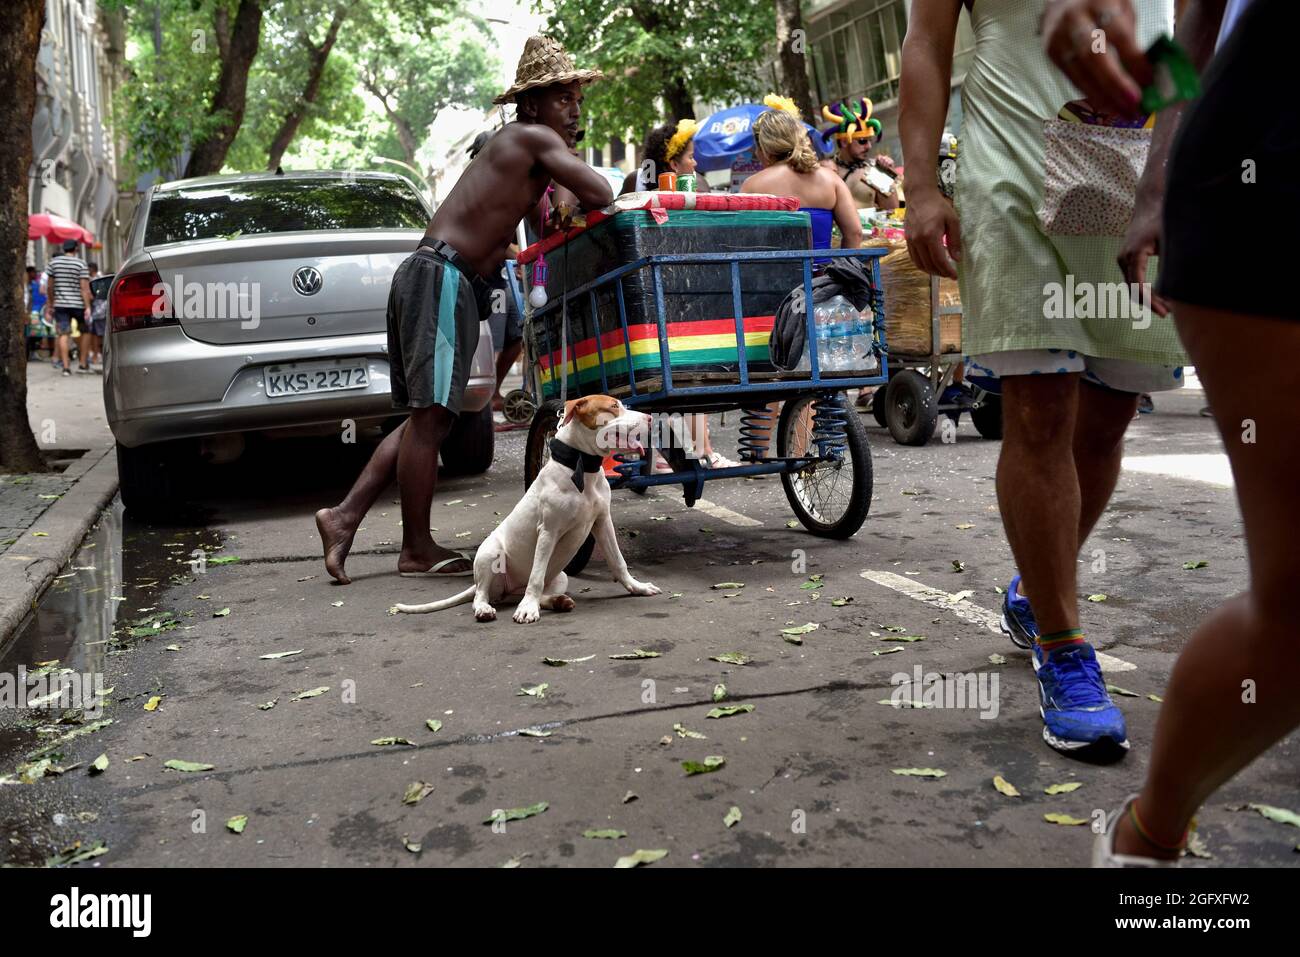 Brasilien - 16. Februar 2020: Ein Straßenverkäufer, der von seinem Hund unterstützt wird, verkauft erfrischende Getränke während einer Straßenkarnevalsumade in der Innenstadt von Rio de Janeiro. Stockfoto